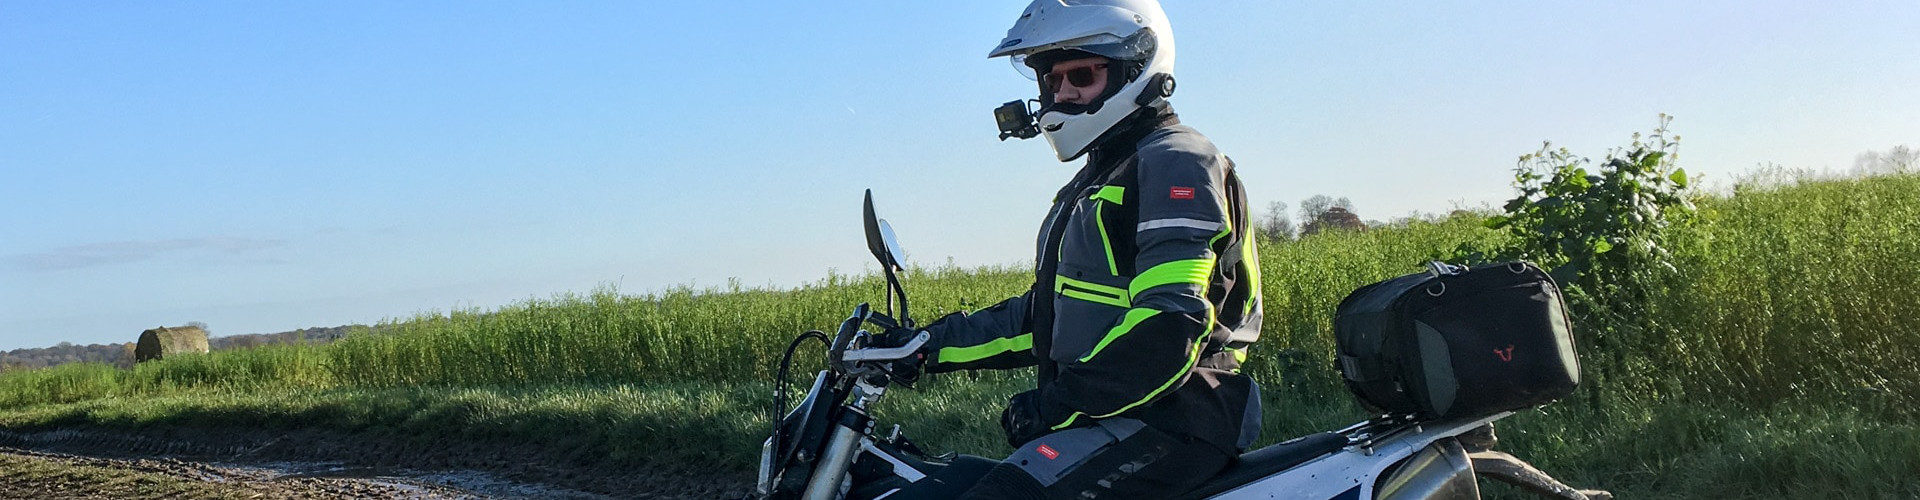 Comment choisir sa veste et son pantalon moto Touring ou Adventure ?  (lexique) – Motard Adventure